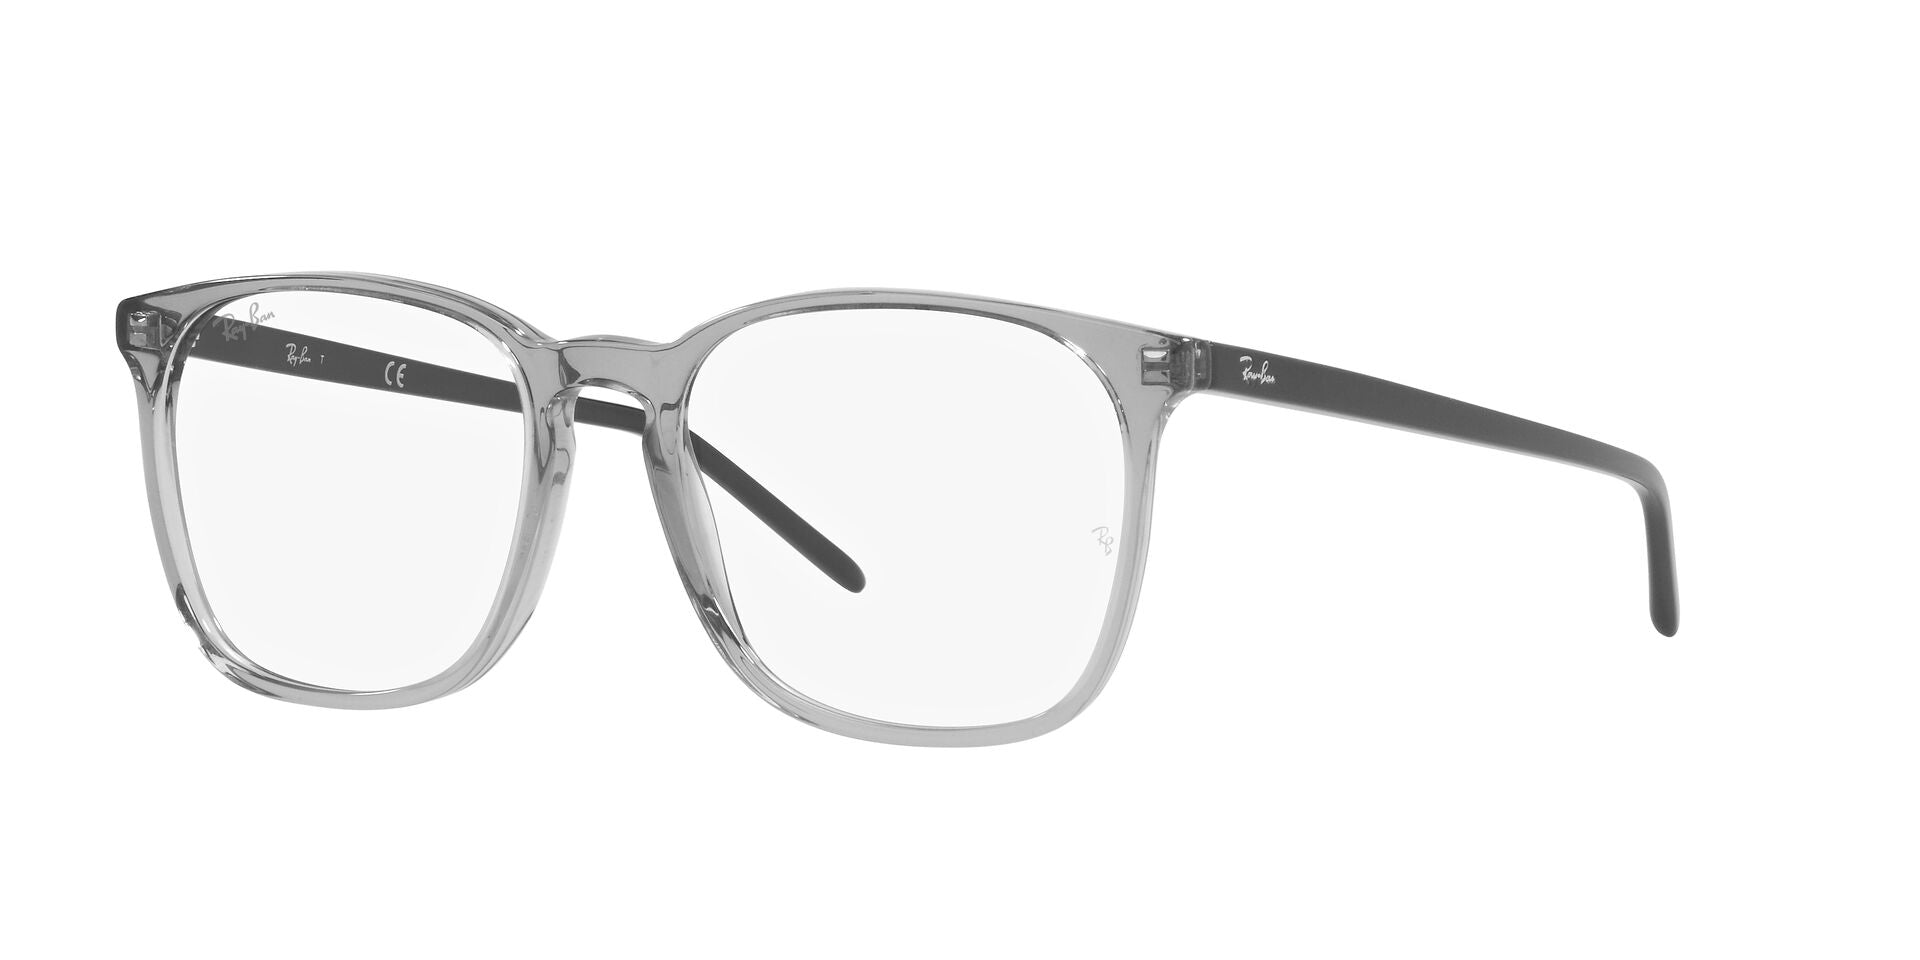 Ray-Ban RB5387 Square Glasses | Fashion Eyewear